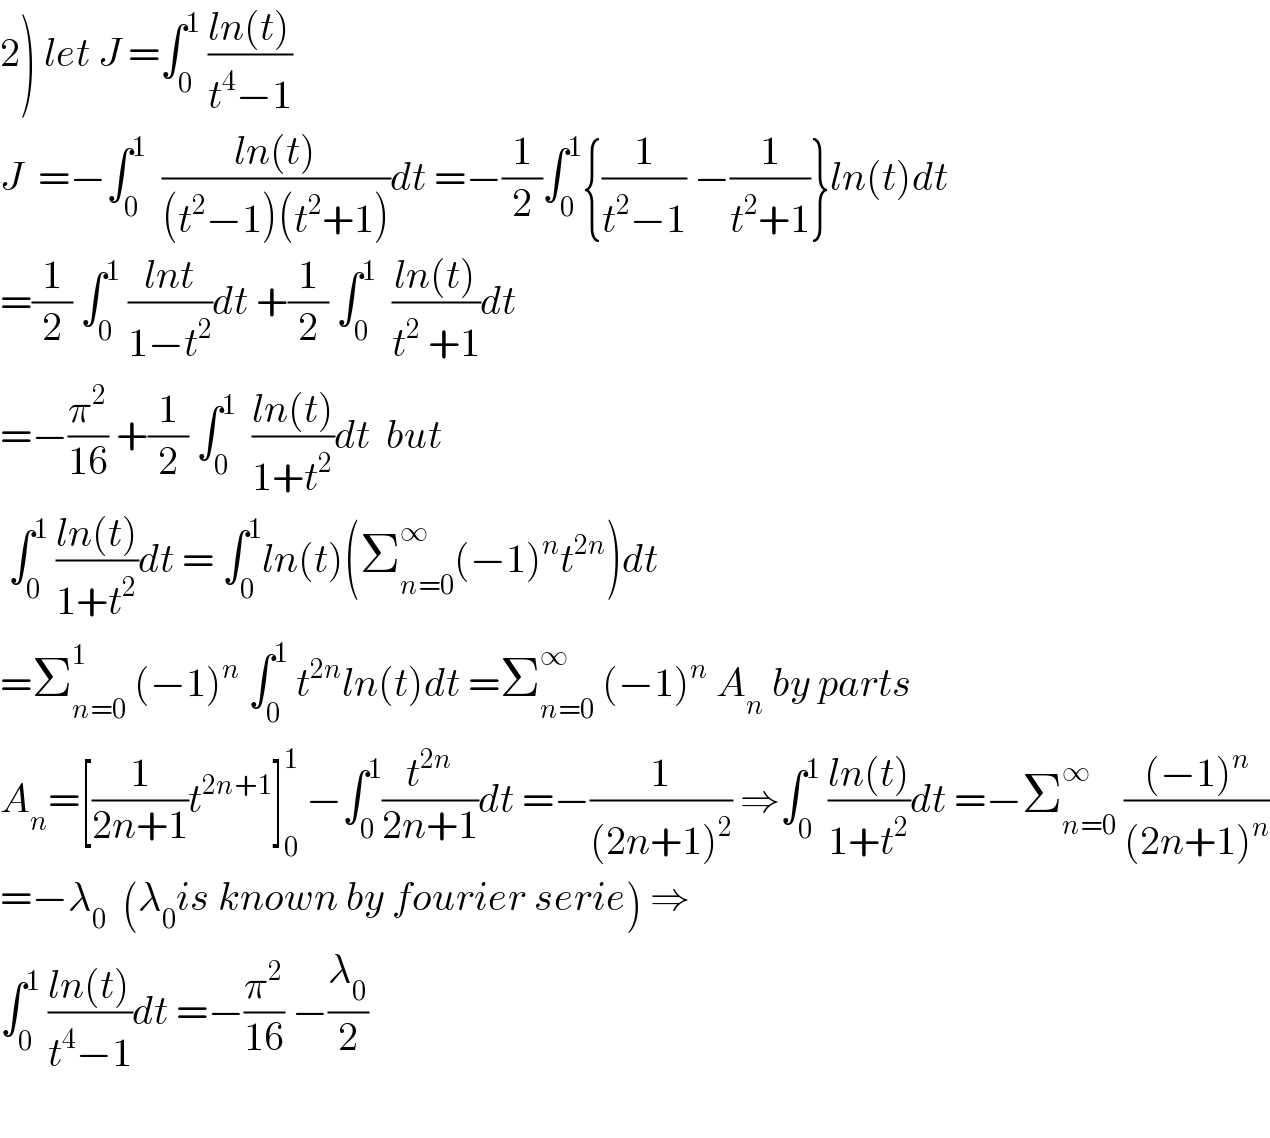 2) let J =∫_0 ^1  ((ln(t))/(t^4 −1))  J  =−∫_0 ^1   ((ln(t))/((t^2 −1)(t^2 +1)))dt =−(1/2)∫_0 ^1 {(1/(t^2 −1)) −(1/(t^2 +1))}ln(t)dt  =(1/2) ∫_0 ^1  ((lnt)/(1−t^2 ))dt +(1/2) ∫_0 ^1   ((ln(t))/(t^2  +1))dt  =−(π^2 /(16)) +(1/2) ∫_0 ^1   ((ln(t))/(1+t^2 ))dt  but   ∫_0 ^1  ((ln(t))/(1+t^2 ))dt = ∫_0 ^1 ln(t)(Σ_(n=0) ^∞ (−1)^n t^(2n) )dt  =Σ_(n=0) ^1  (−1)^n  ∫_0 ^1  t^(2n) ln(t)dt =Σ_(n=0) ^∞  (−1)^n  A_n  by parts  A_n =[(1/(2n+1))t^(2n+1) ]_0 ^1  −∫_0 ^1 (t^(2n) /(2n+1))dt =−(1/((2n+1)^2 )) ⇒∫_0 ^1  ((ln(t))/(1+t^2 ))dt =−Σ_(n=0) ^∞  (((−1)^n )/((2n+1)^n ))  =−λ_0   (λ_0 is known by fourier serie) ⇒  ∫_0 ^1  ((ln(t))/(t^4 −1))dt =−(π^2 /(16)) −(λ_0 /2)    